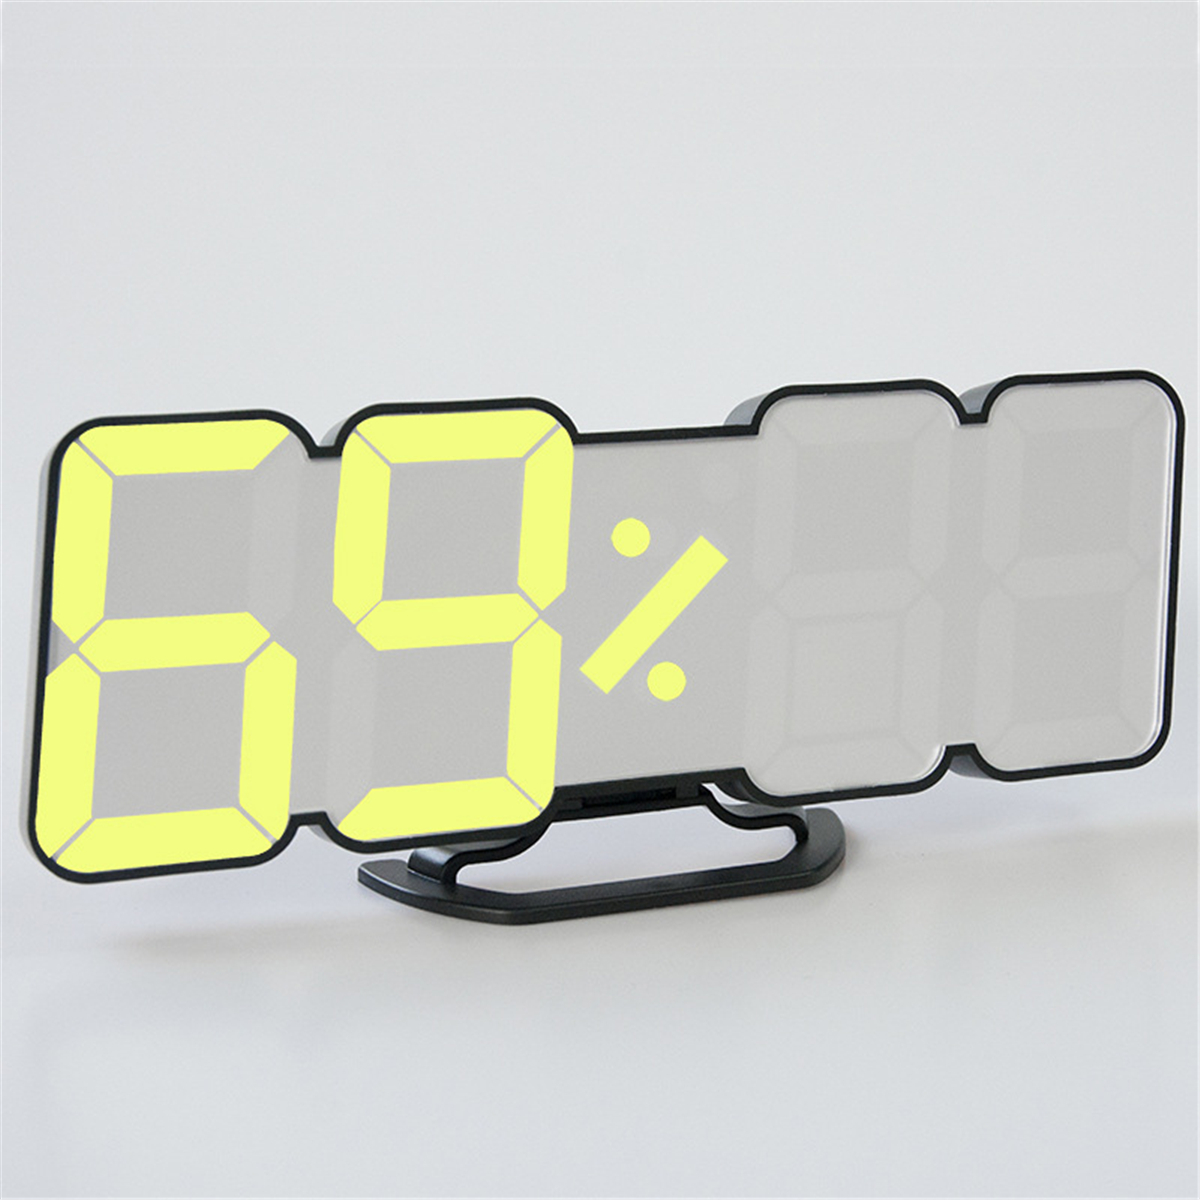 

3D LED Digital Clock 115 Colors Temp Humidity Display Desk Wall Alarm Home Decor Alarm Clock with Temperature Voice Cont